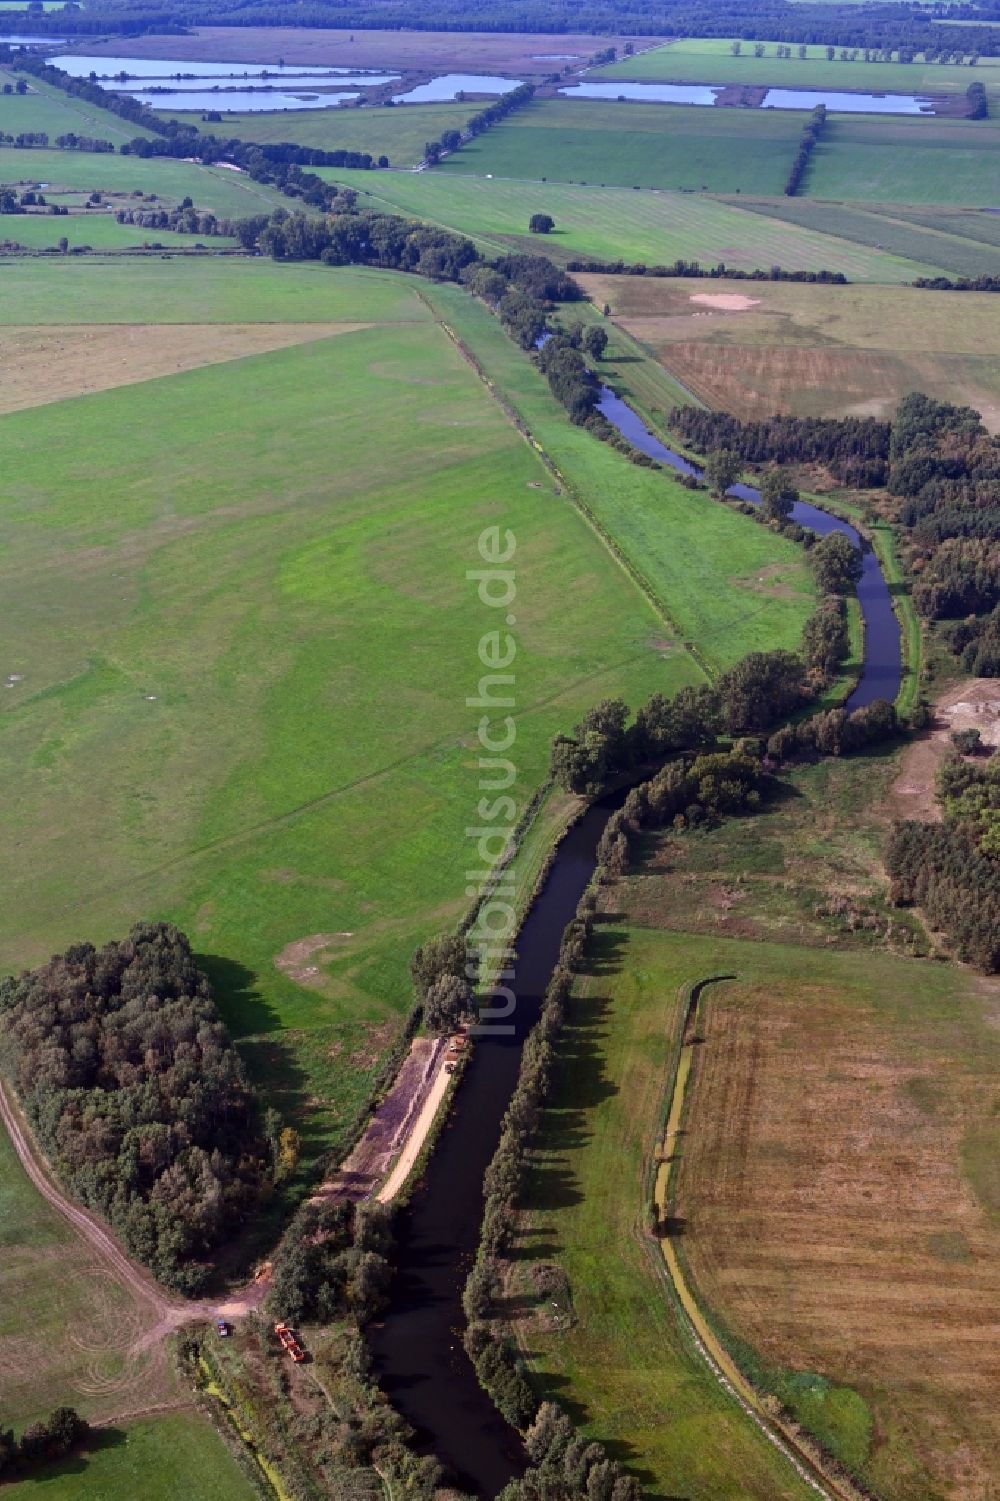 Luftaufnahme Garwitz - Uferbereiche am Flußverlauf der Elde in Garwitz im Bundesland Mecklenburg-Vorpommern, Deutschland